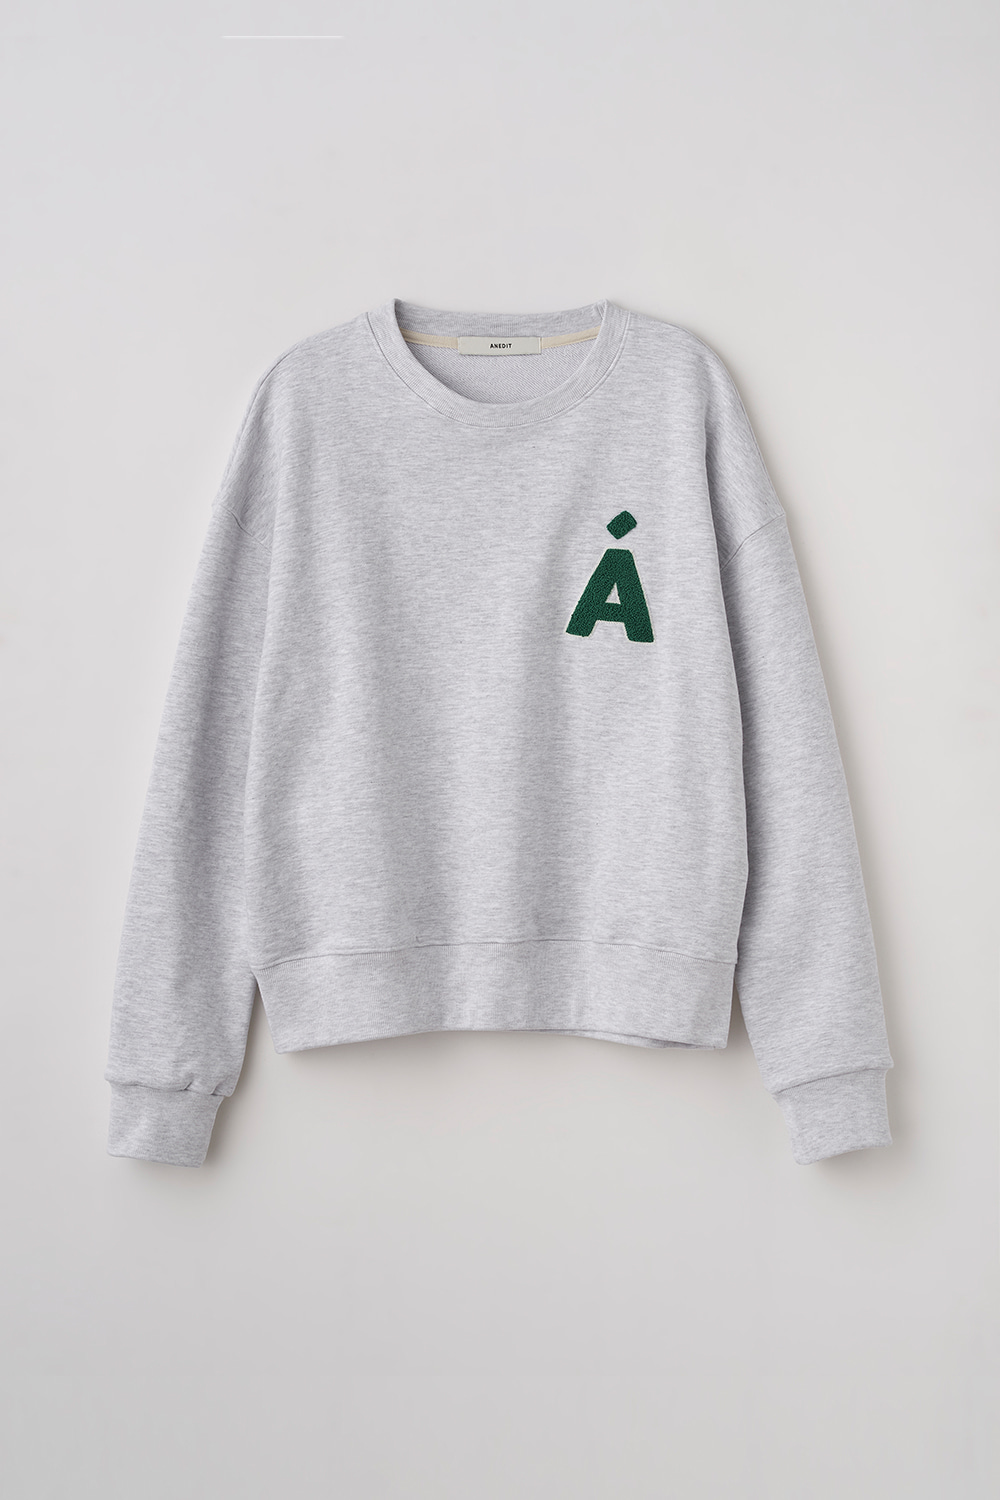 A Applique Sweatshirt_WM